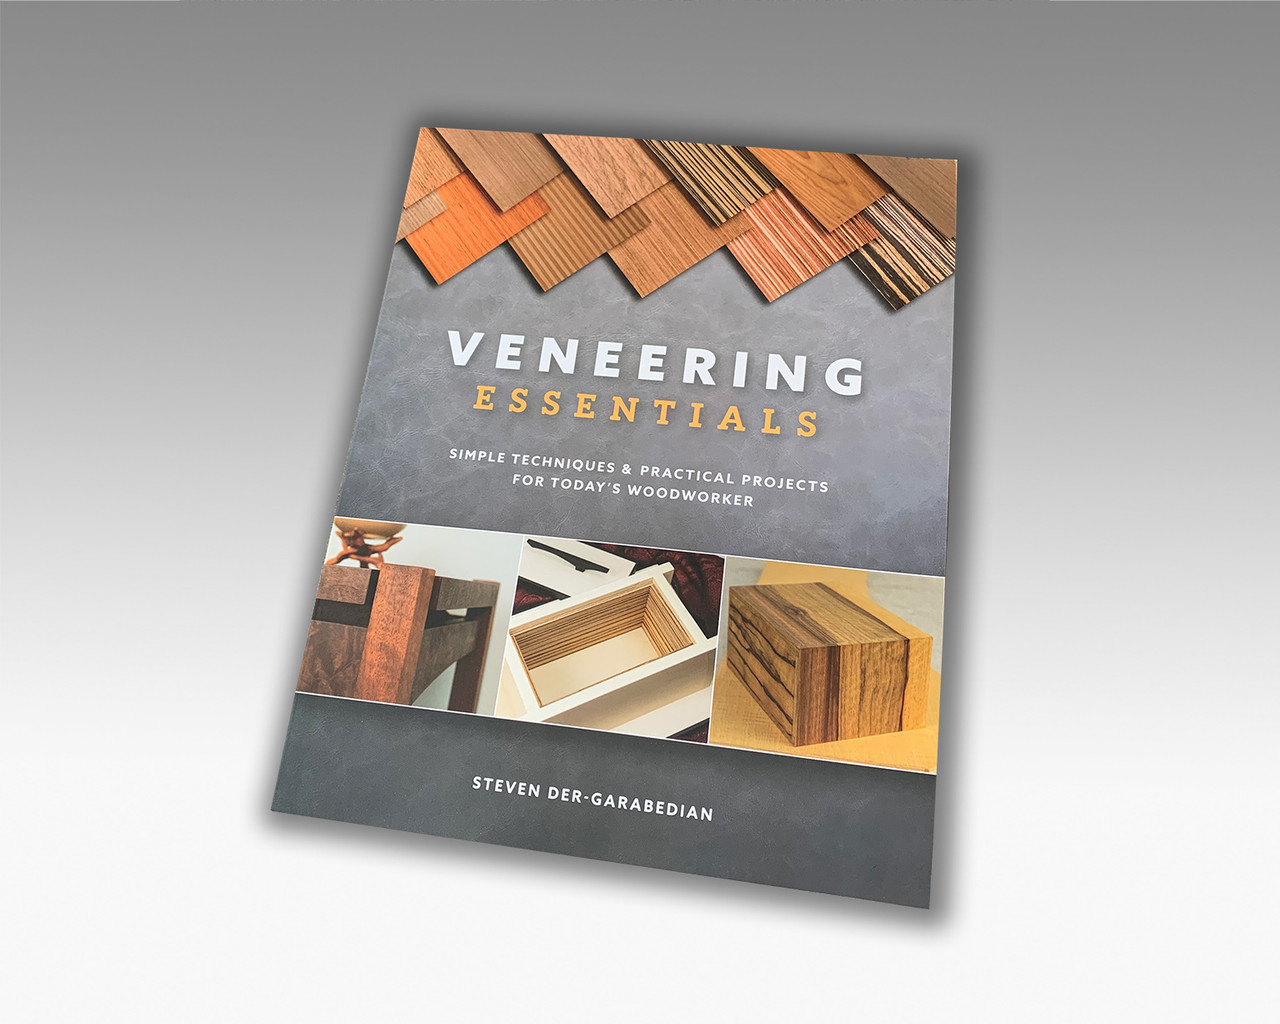 veneering-essentials-book-closed-copy-54062.jpg